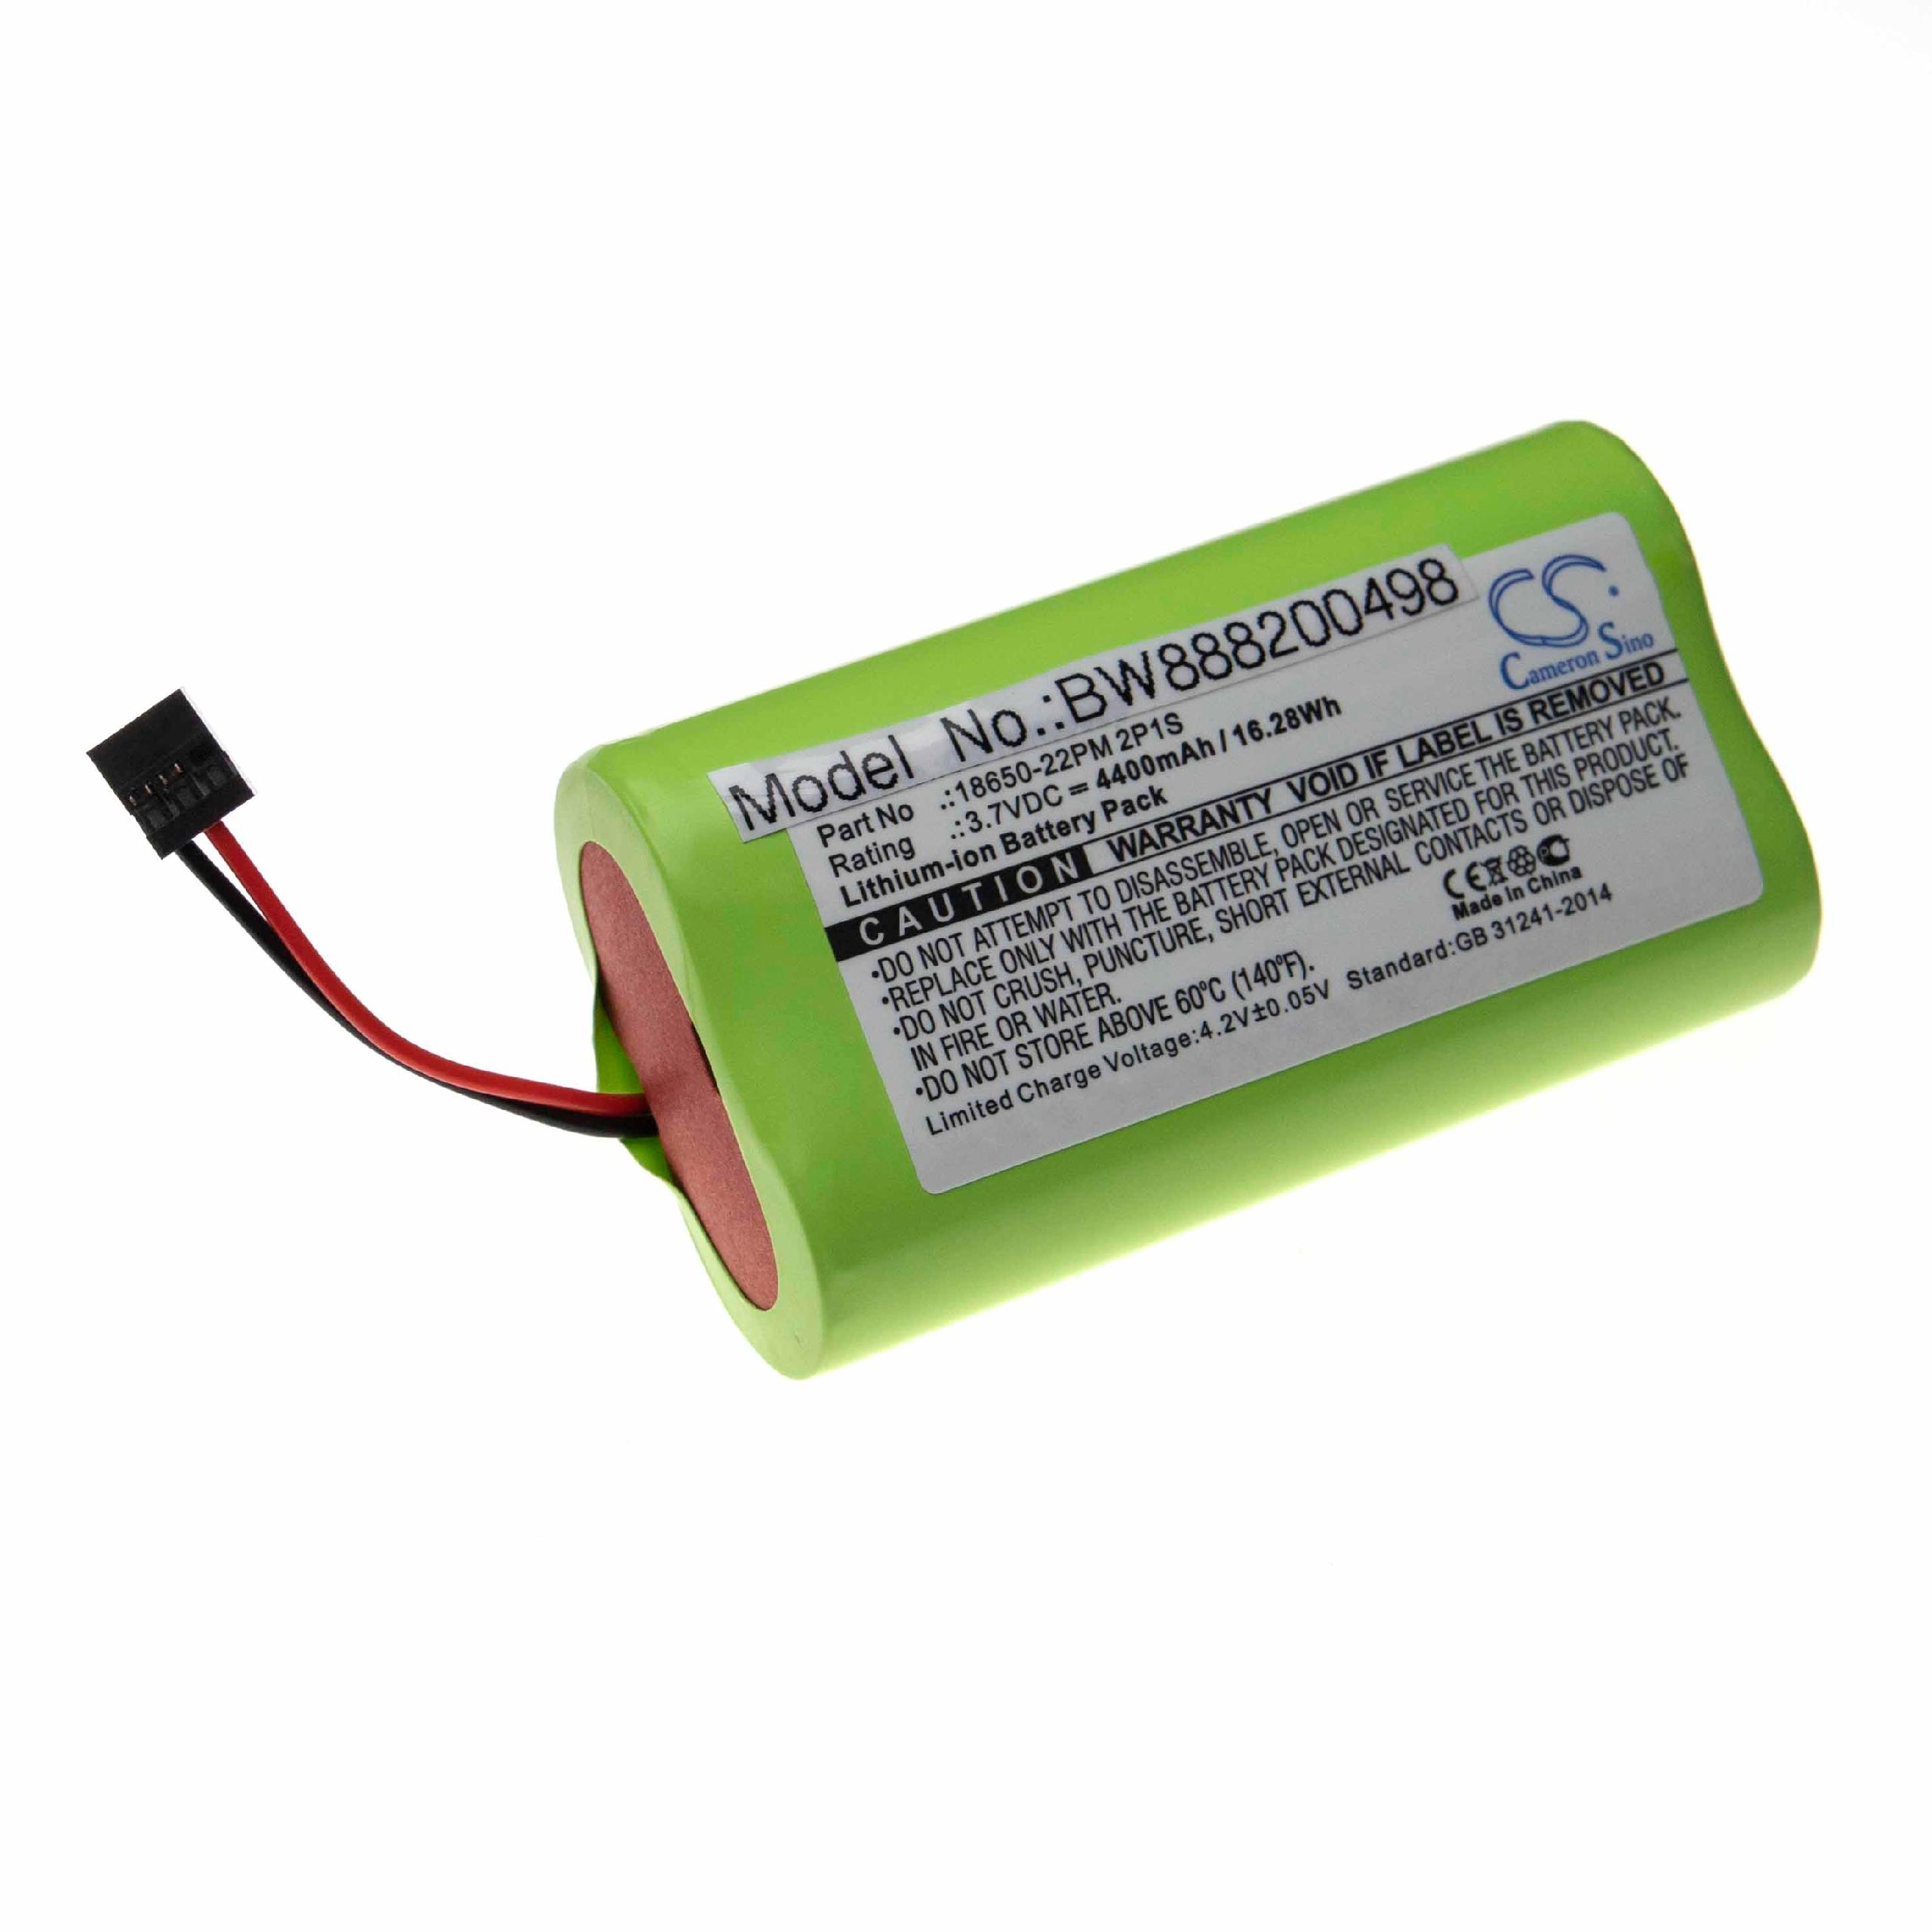 Batterie remplace Trelock 18650-22PM 2P1S pour lampe de poche - 4400mAh 3,7V Li-ion